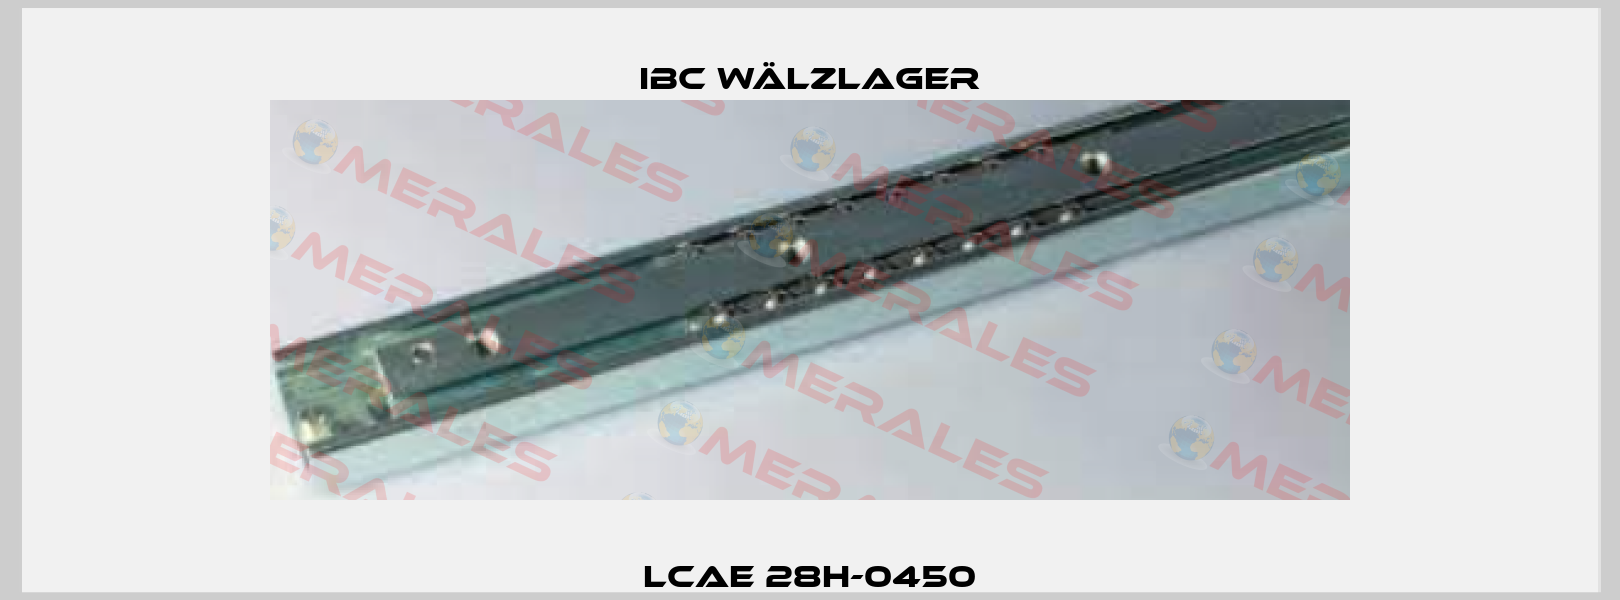 LCAE 28H-0450 IBC Wälzlager